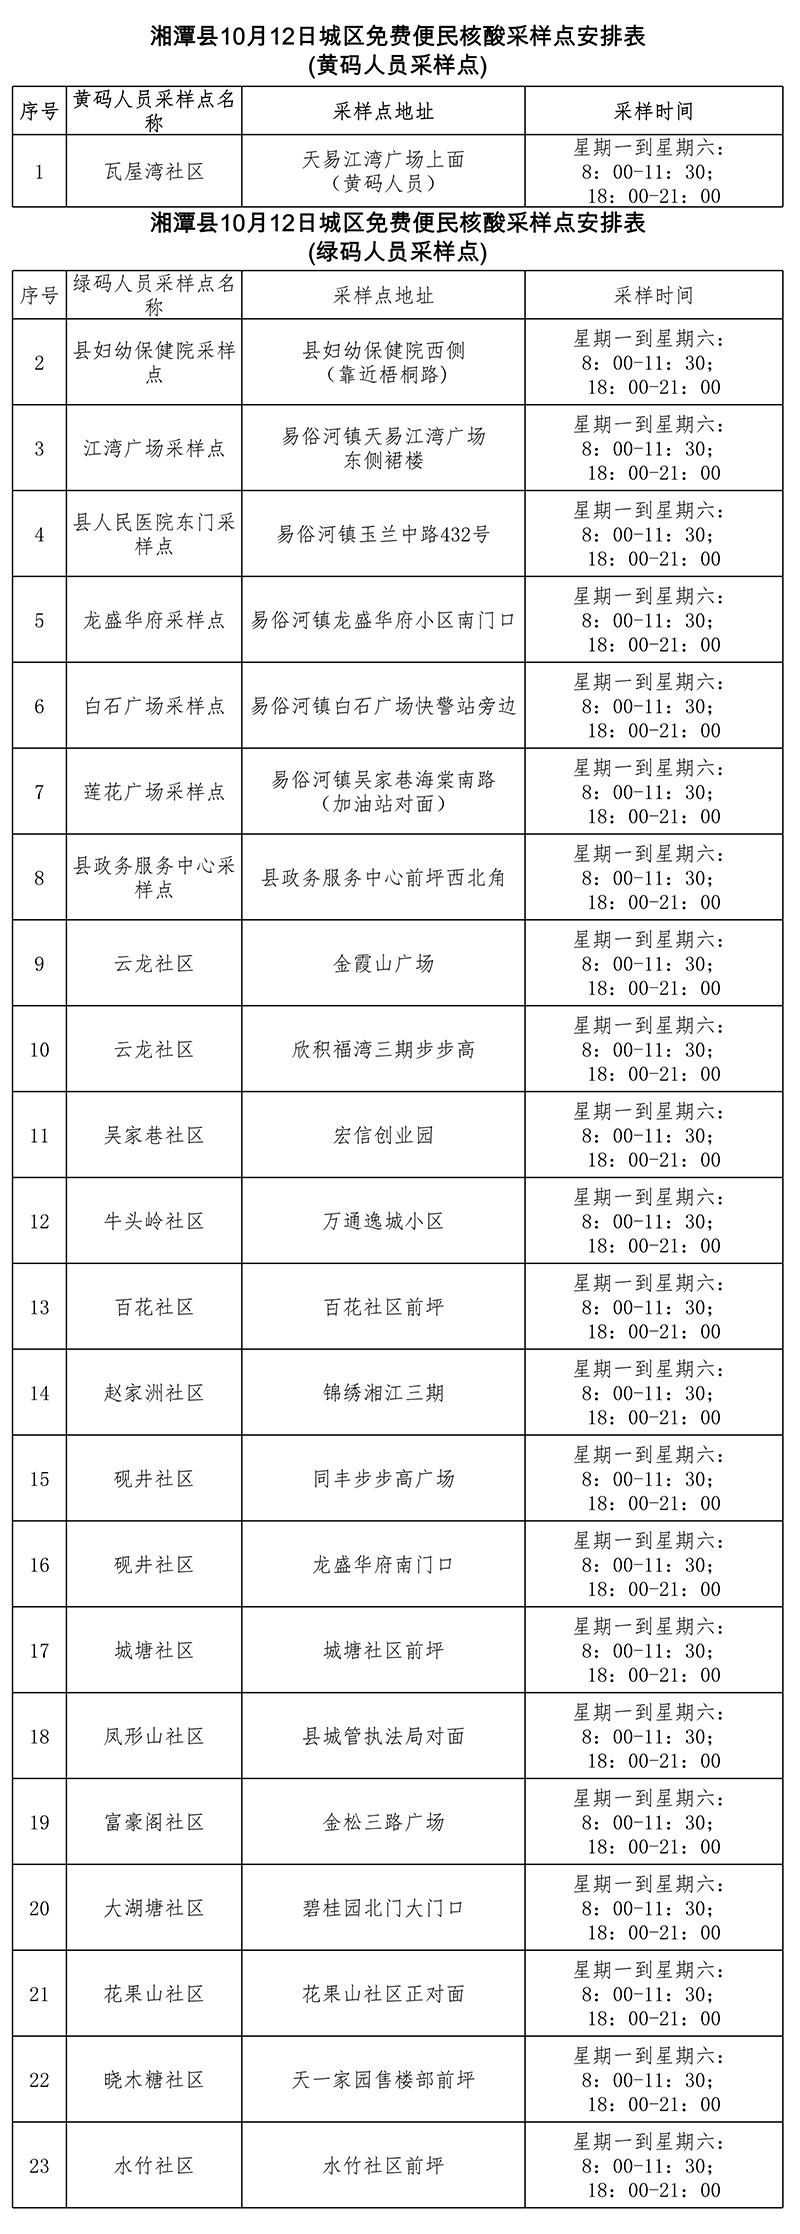 通告！湘潭县城区调整常态化核酸检测点